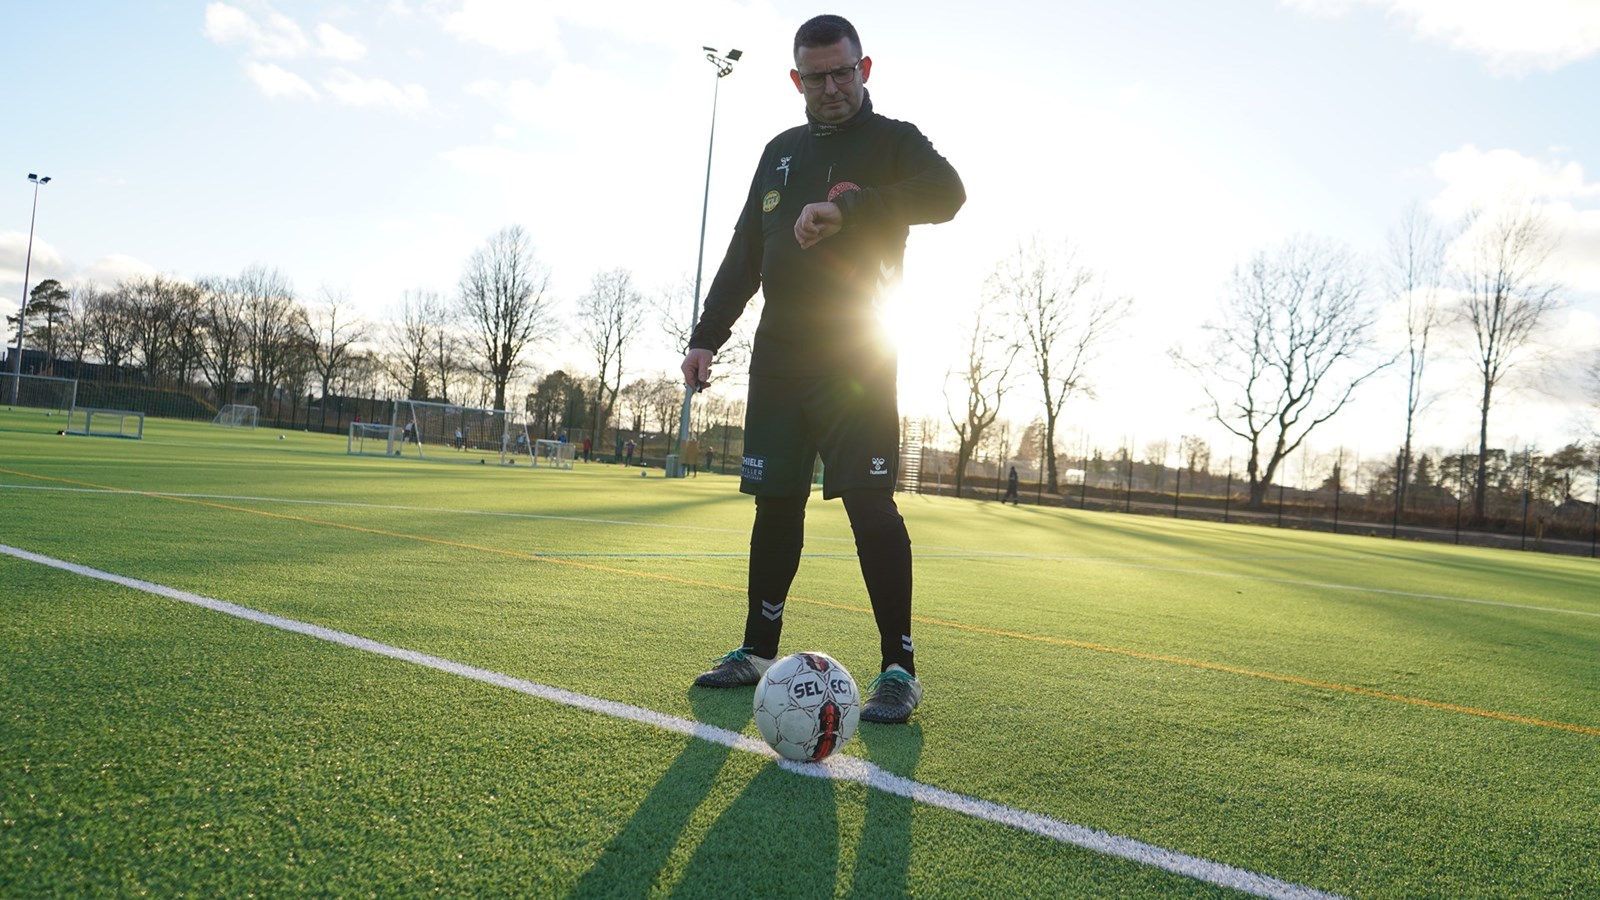 Rekord: 301 nye fodbolddommere i Jylland i år